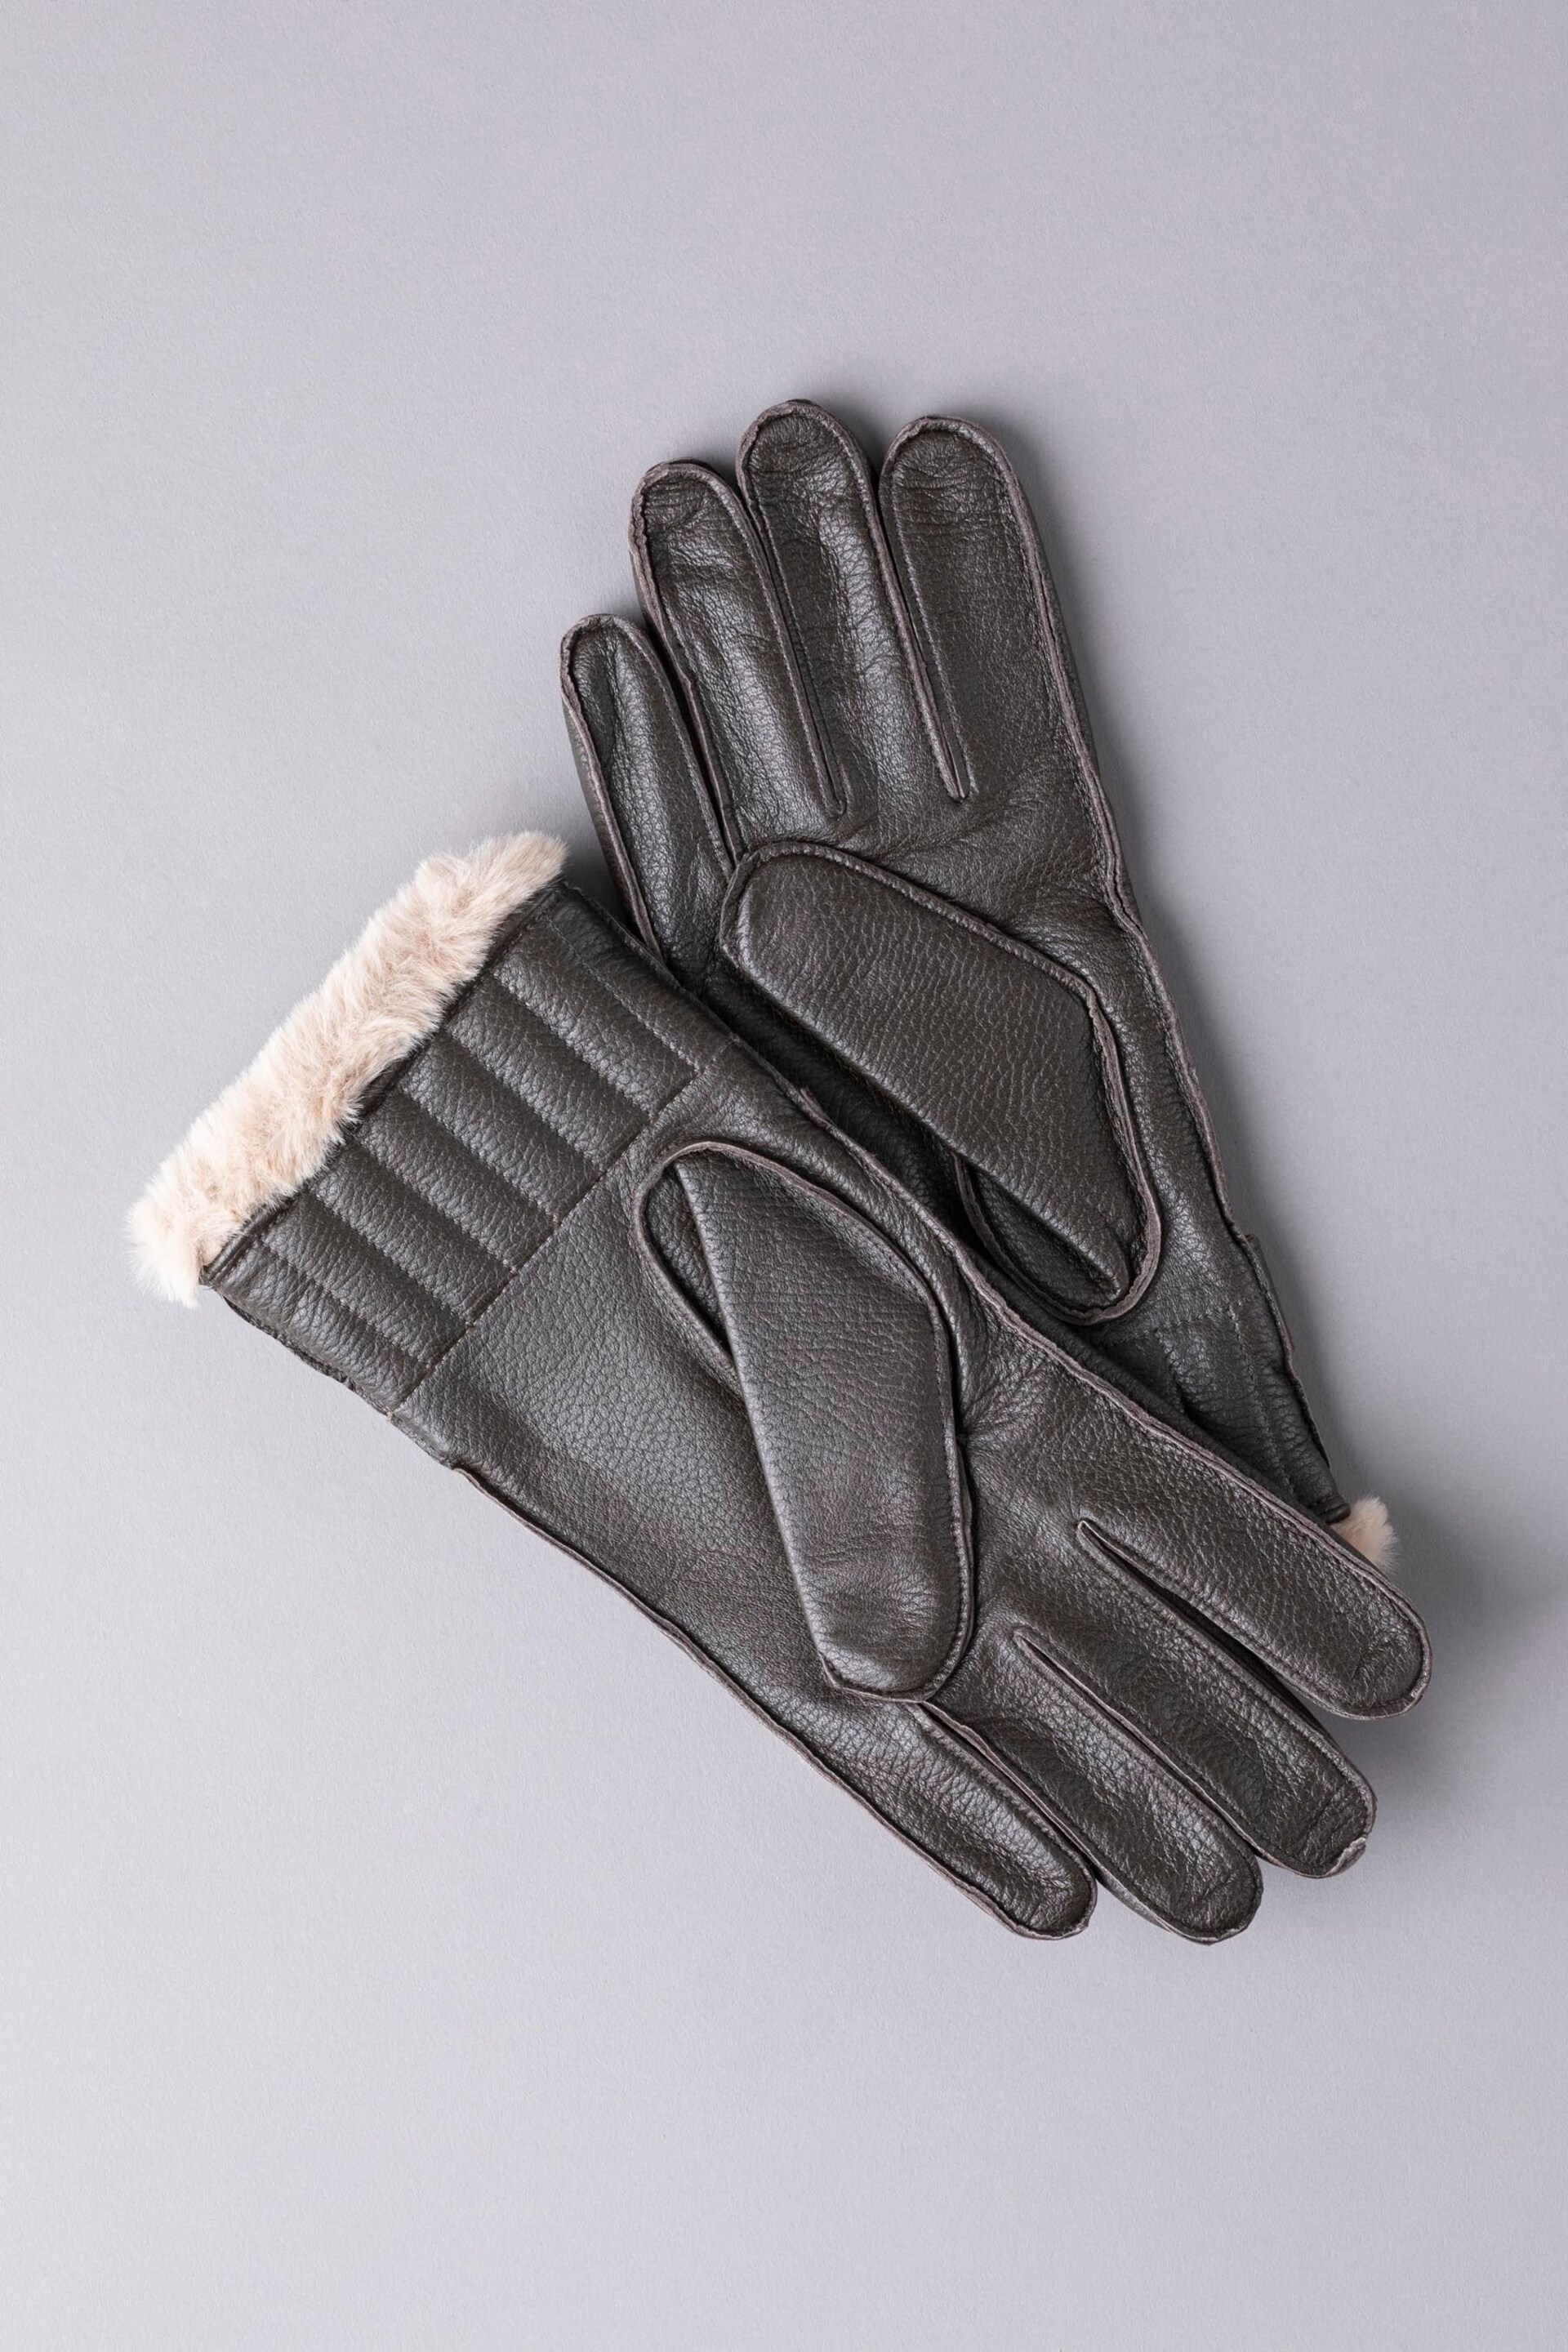 Lakeland Leather Milne Leather Gloves - Image 2 of 3